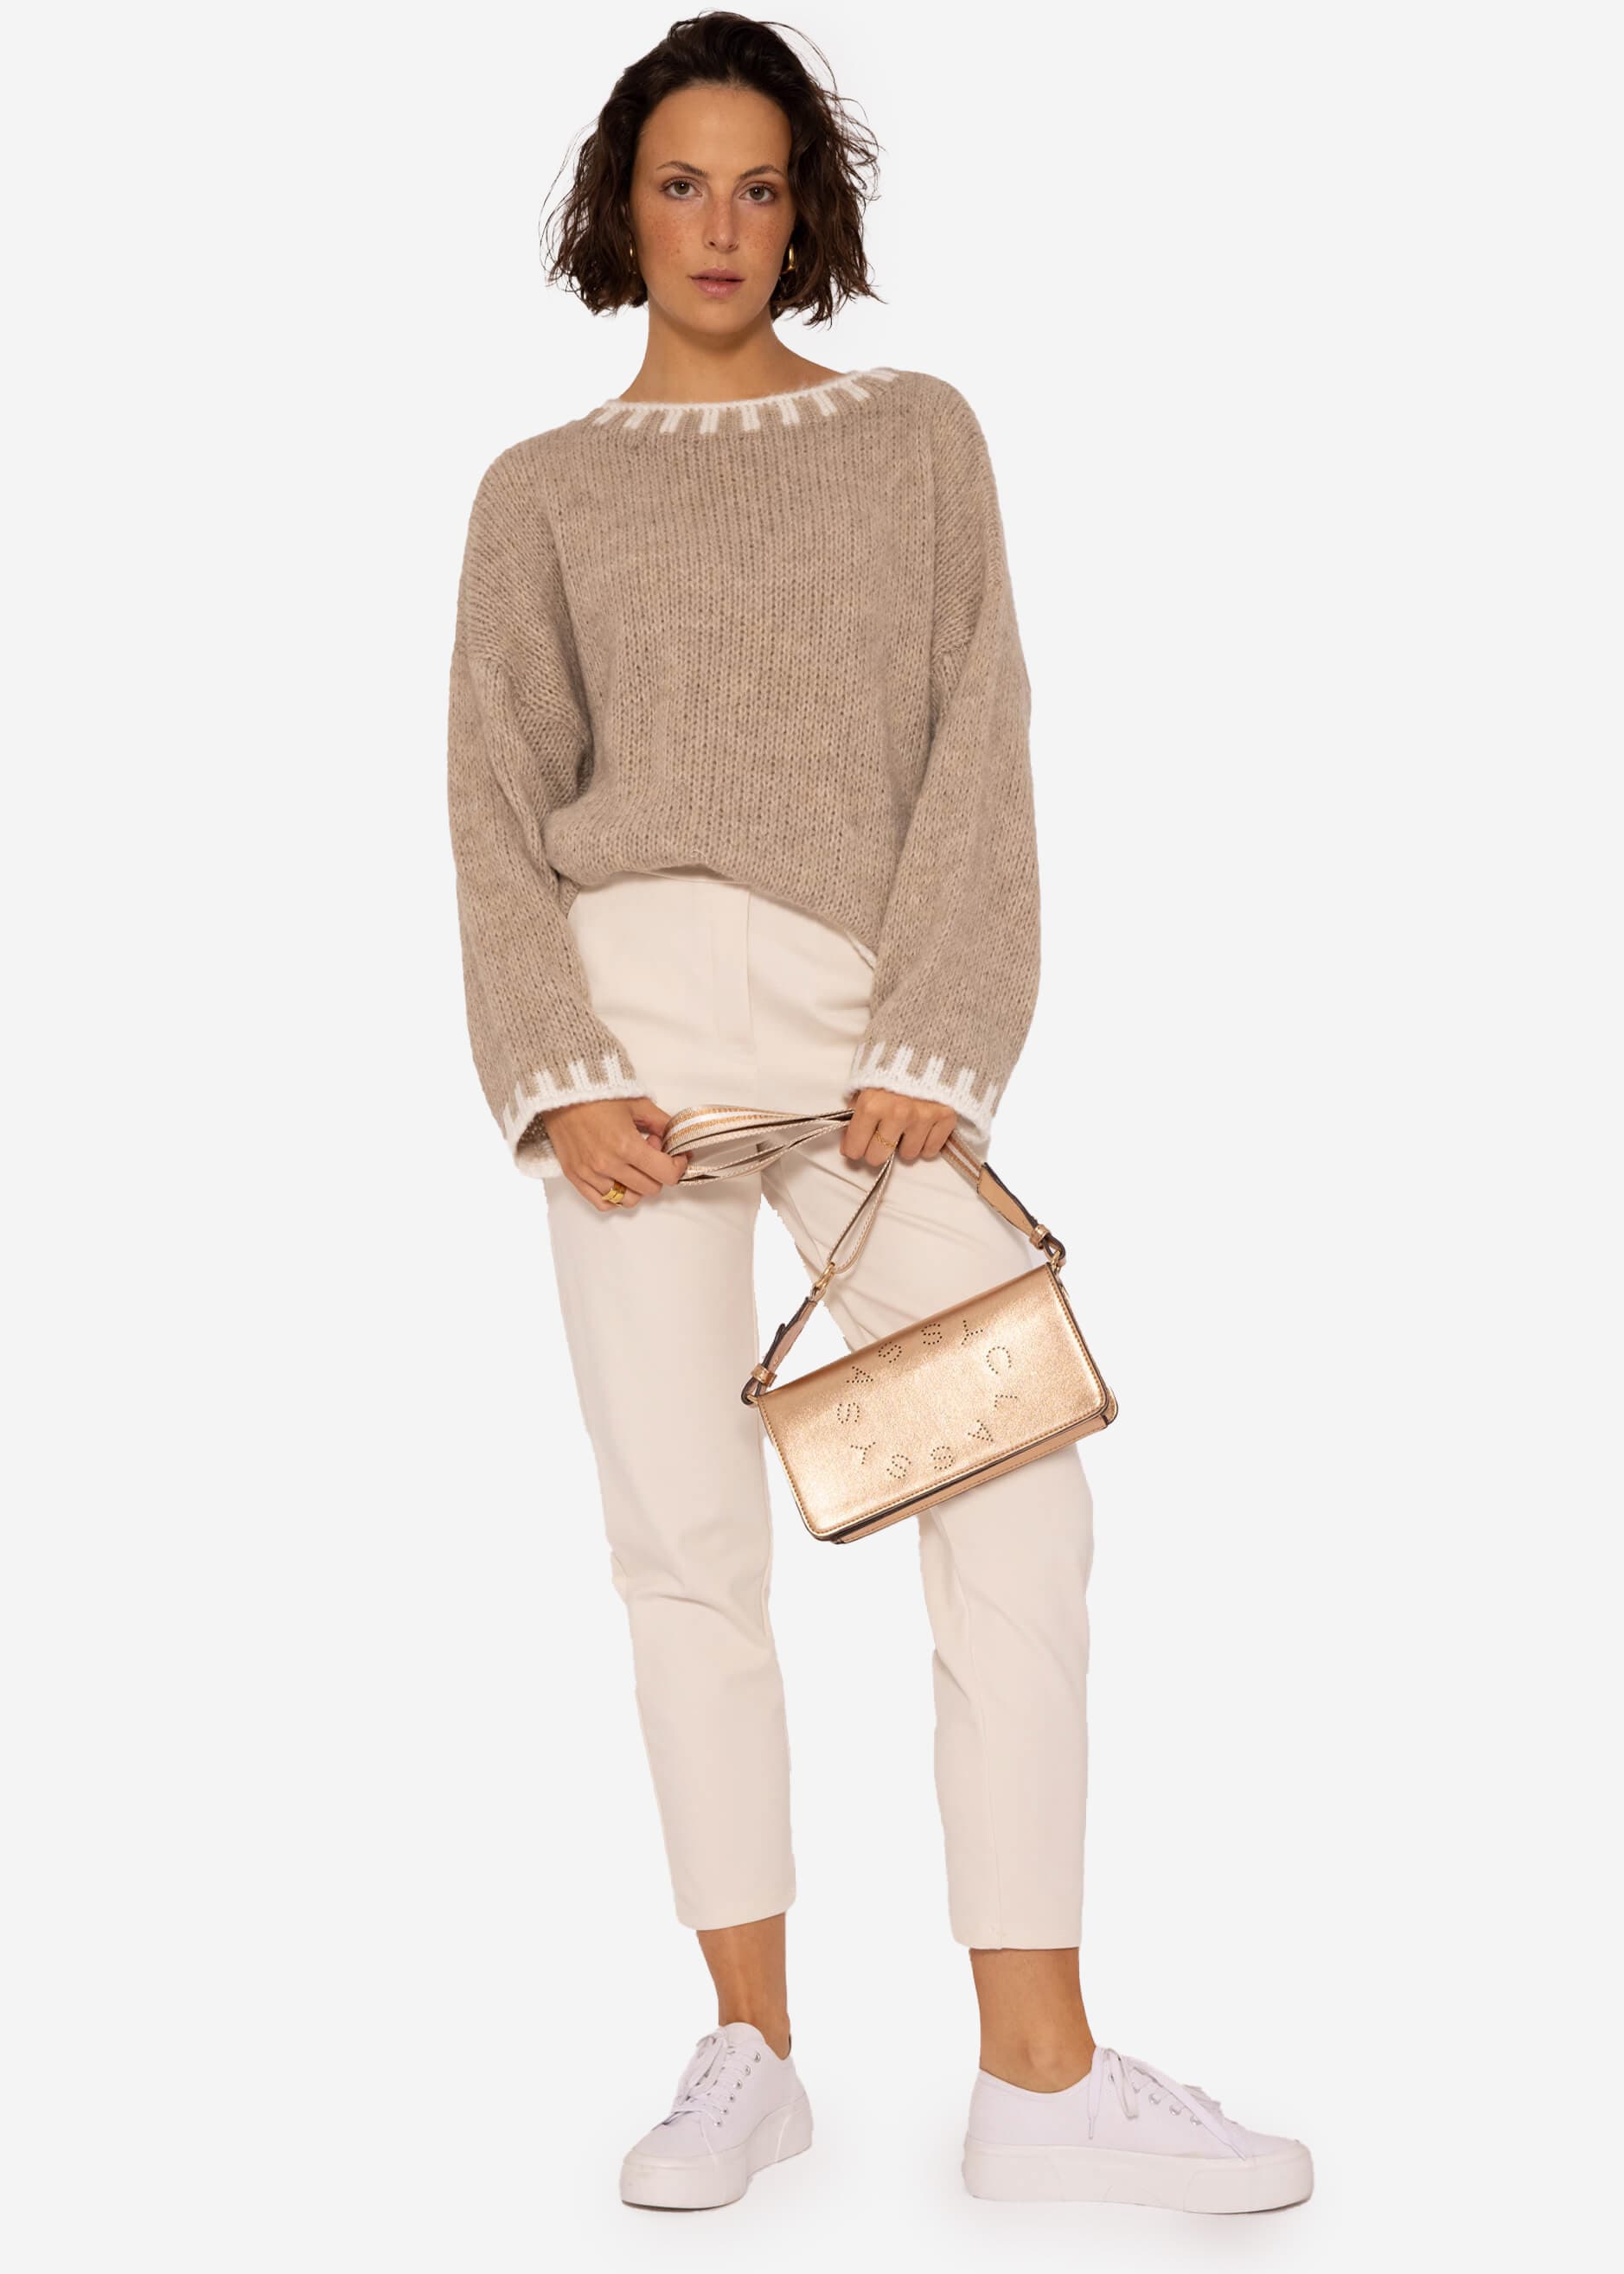 offwhite Bekleidung | Details, mit | SASSYCLASSY beige Pullover Pullover |